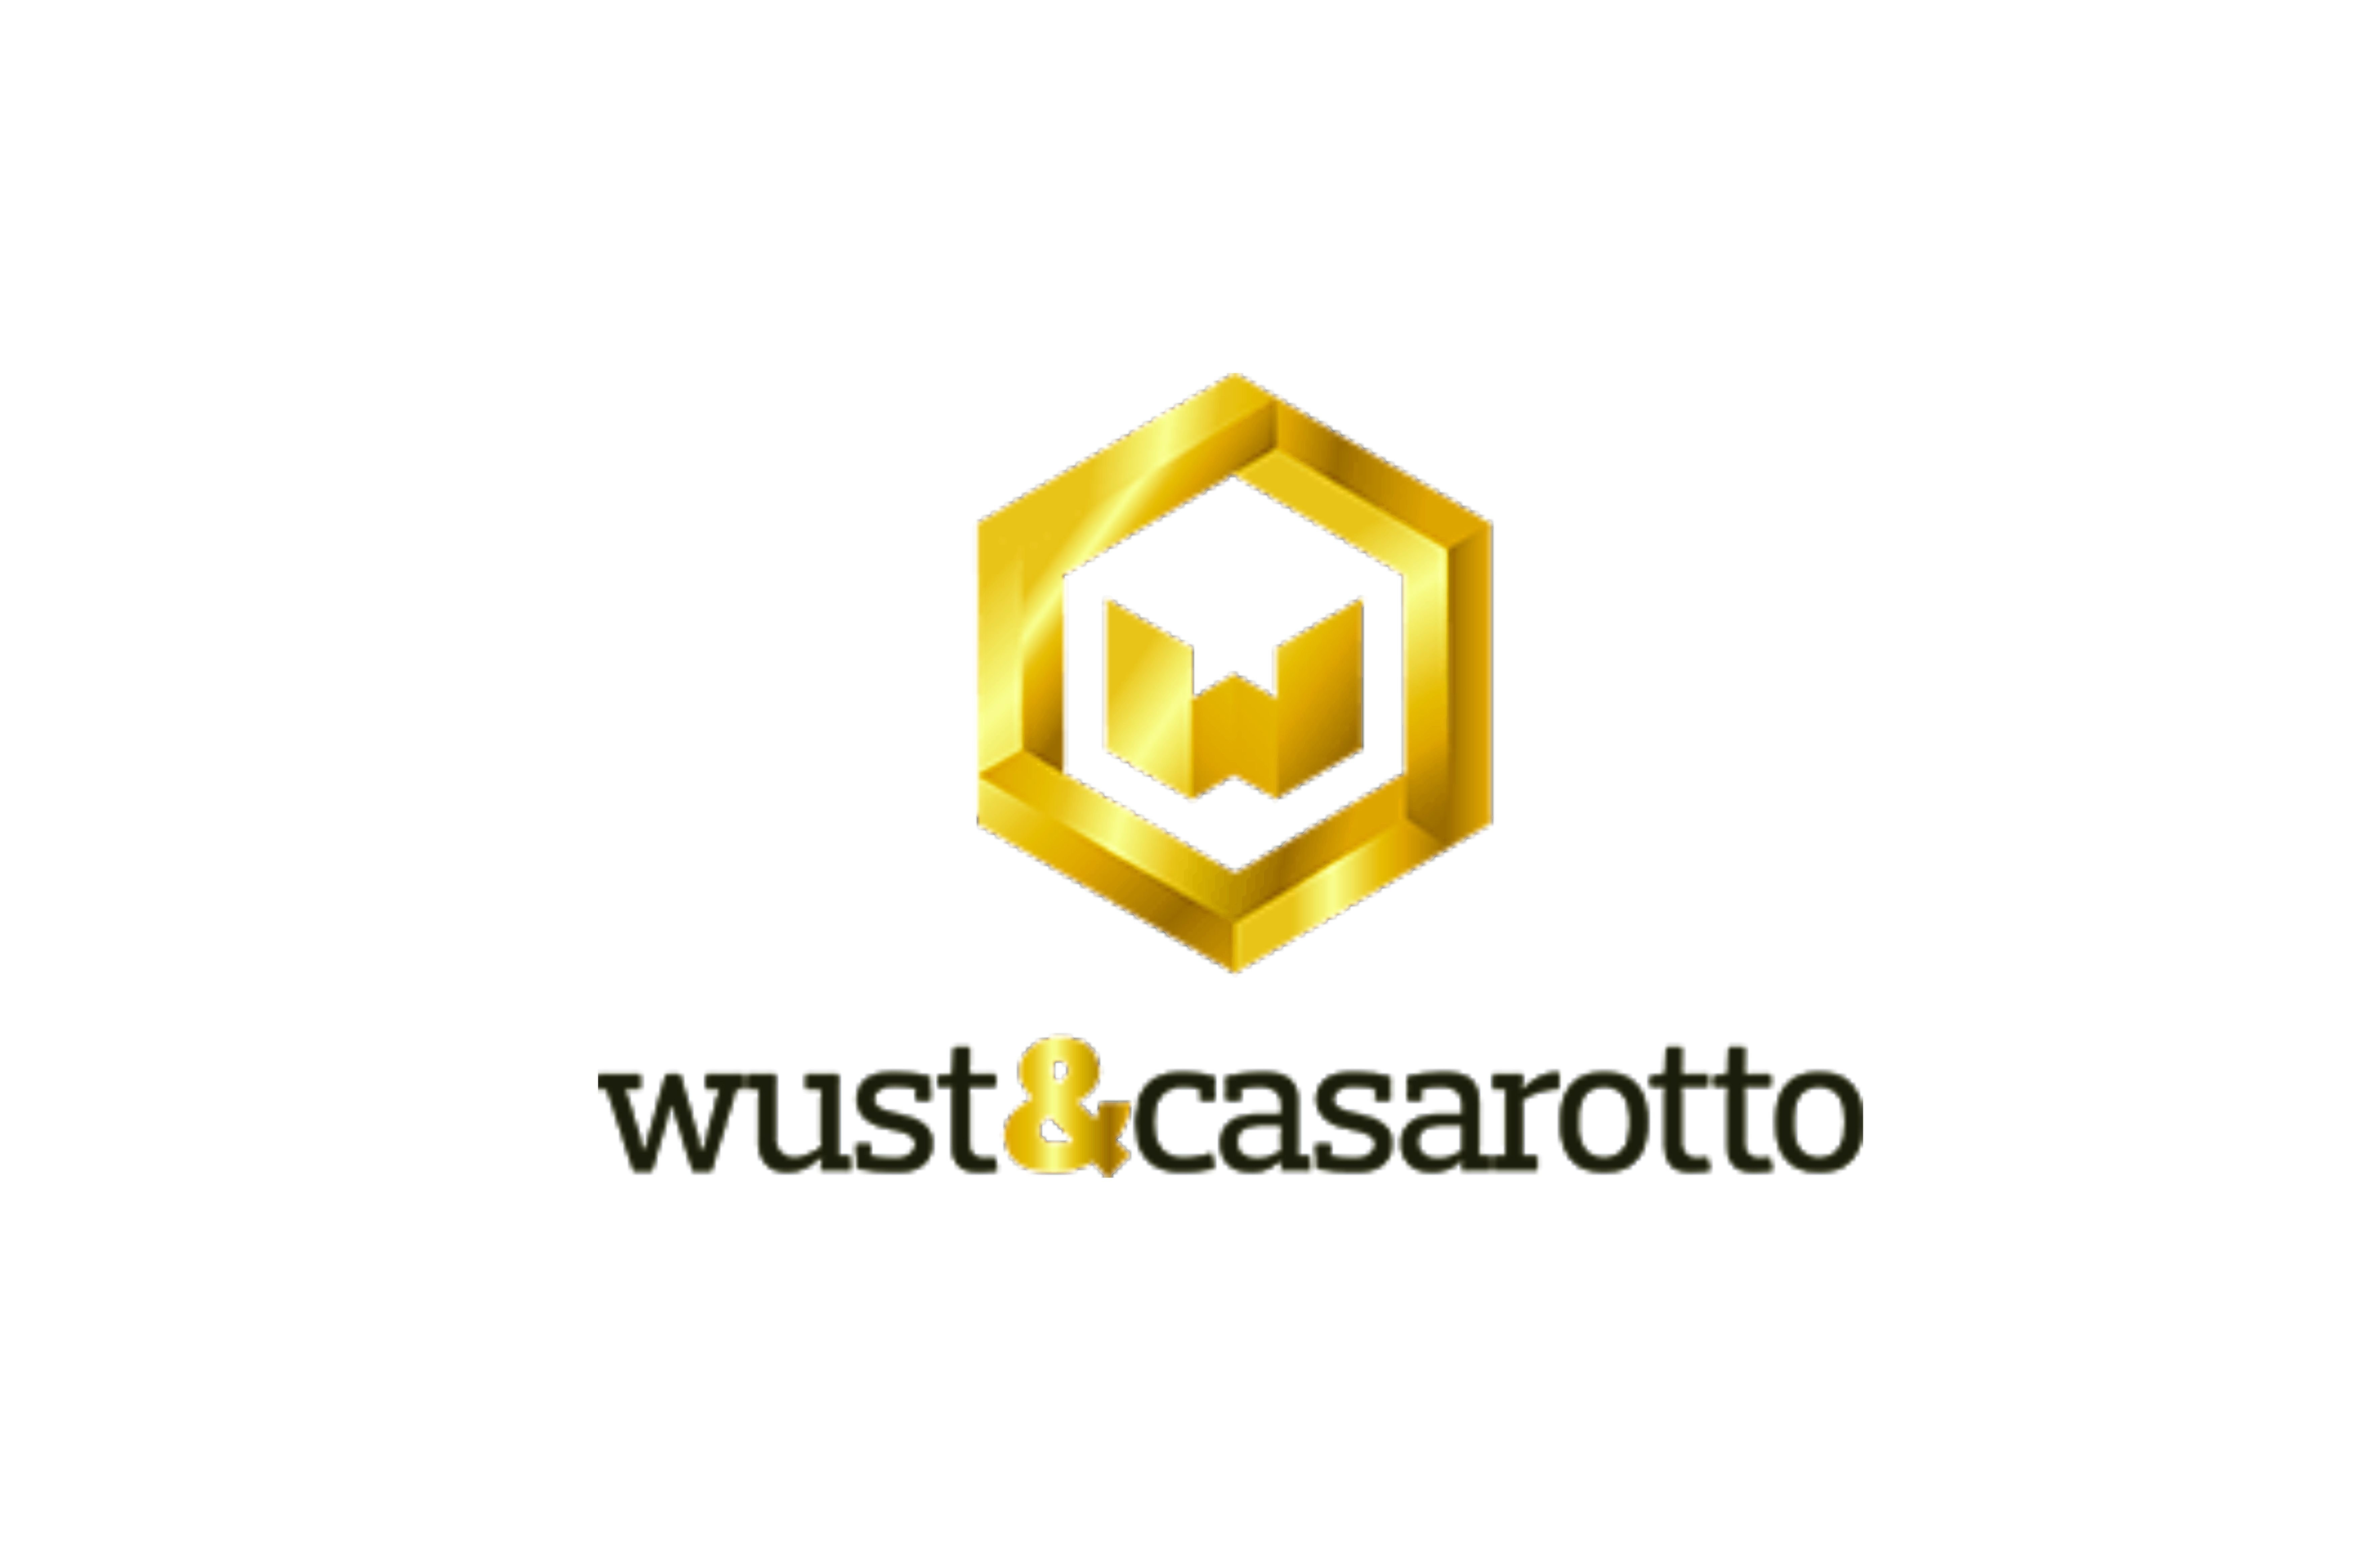 Wust & Casarotto